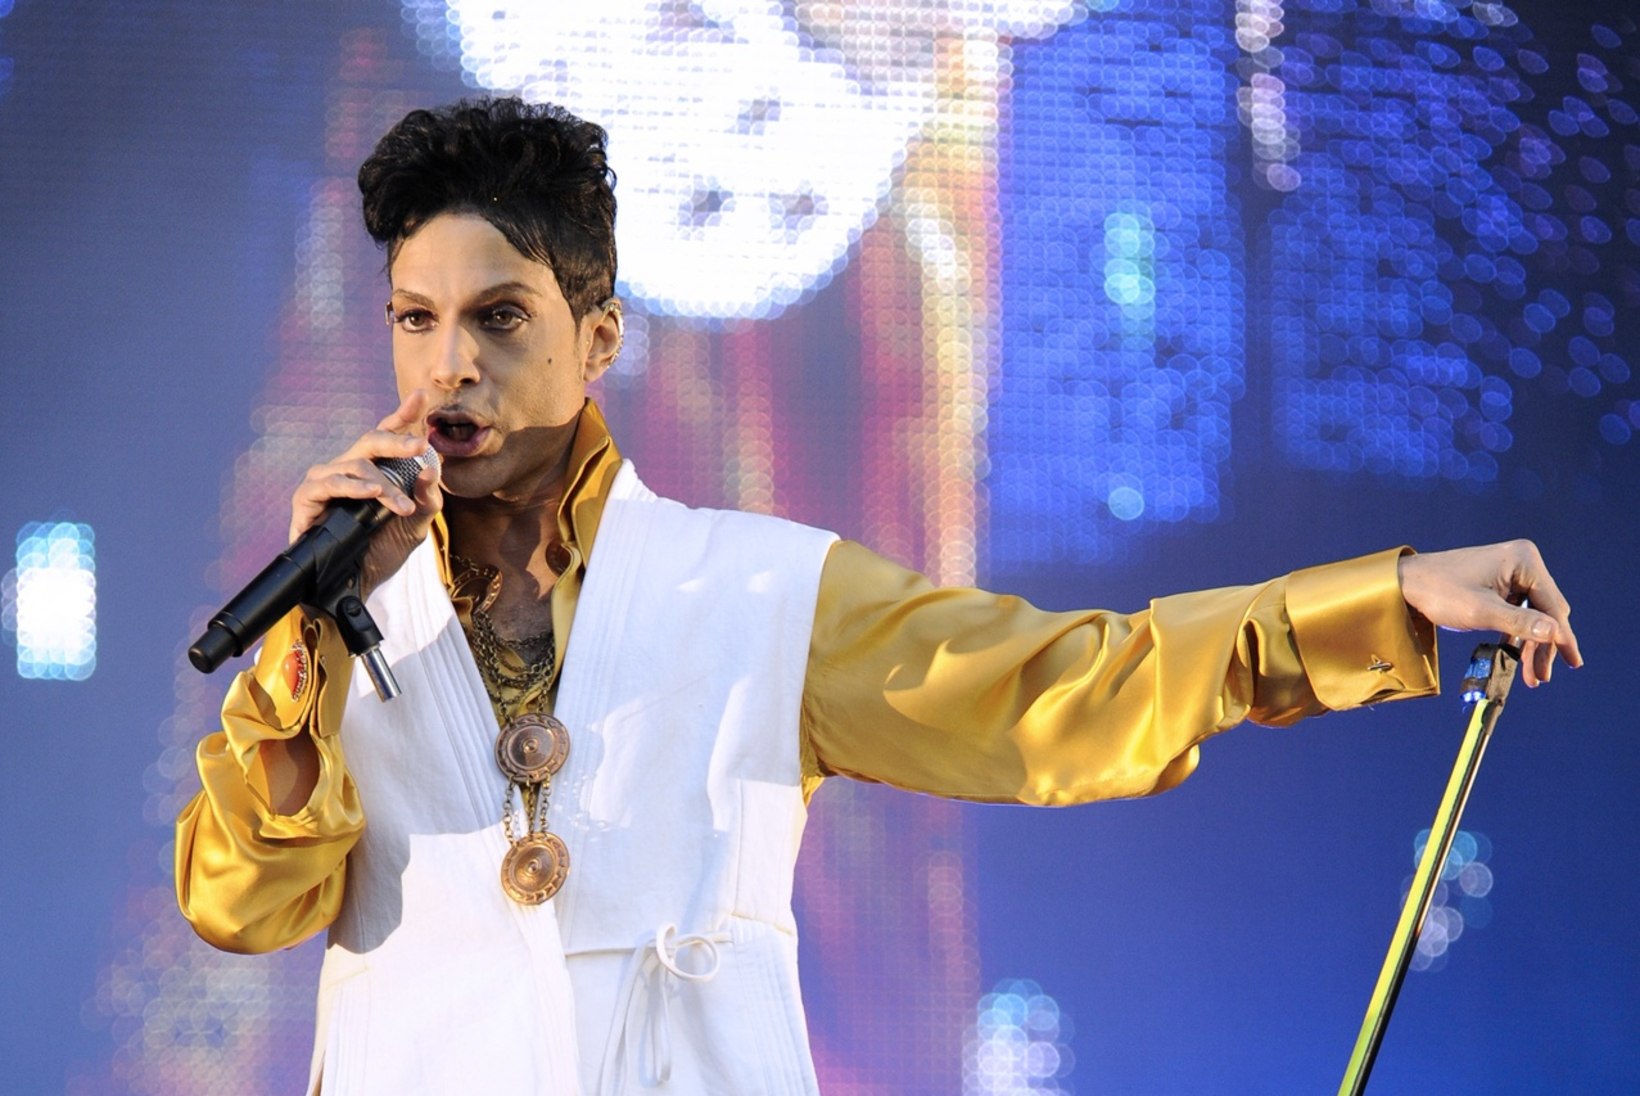 Prince'i surmaga seoses võib tulla süüdistus